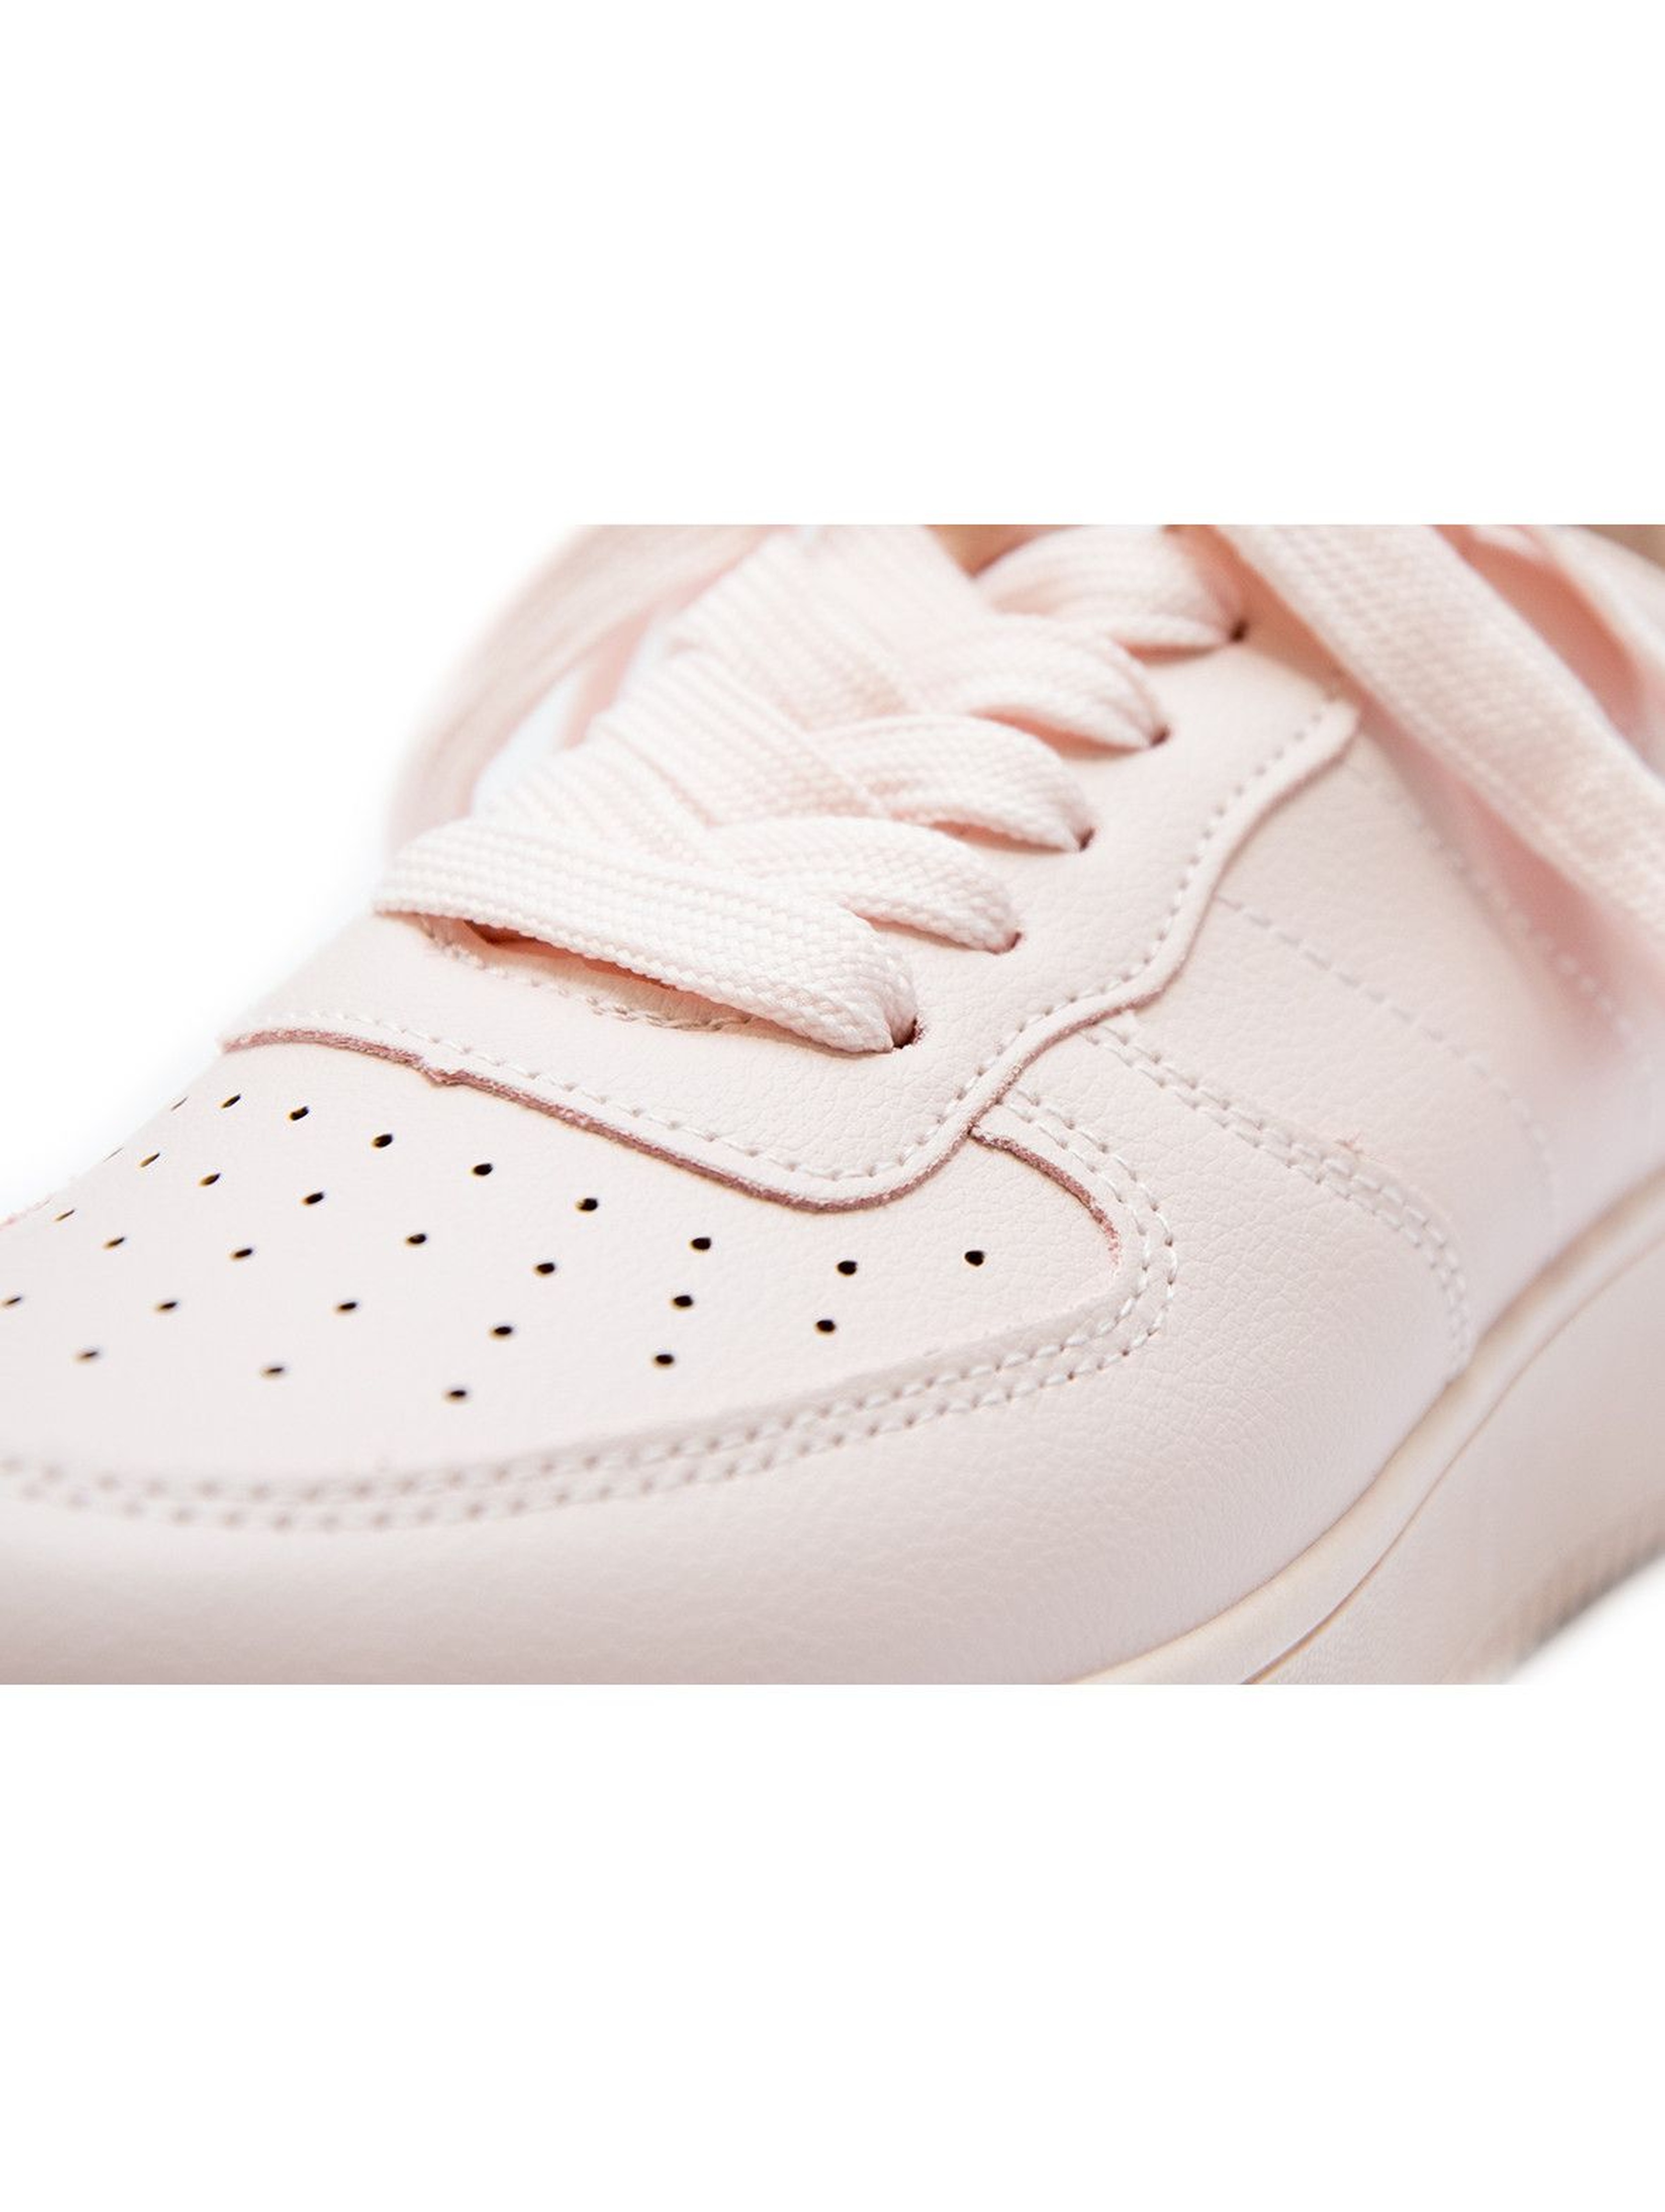 Damskie buty typu sneakersy różowe